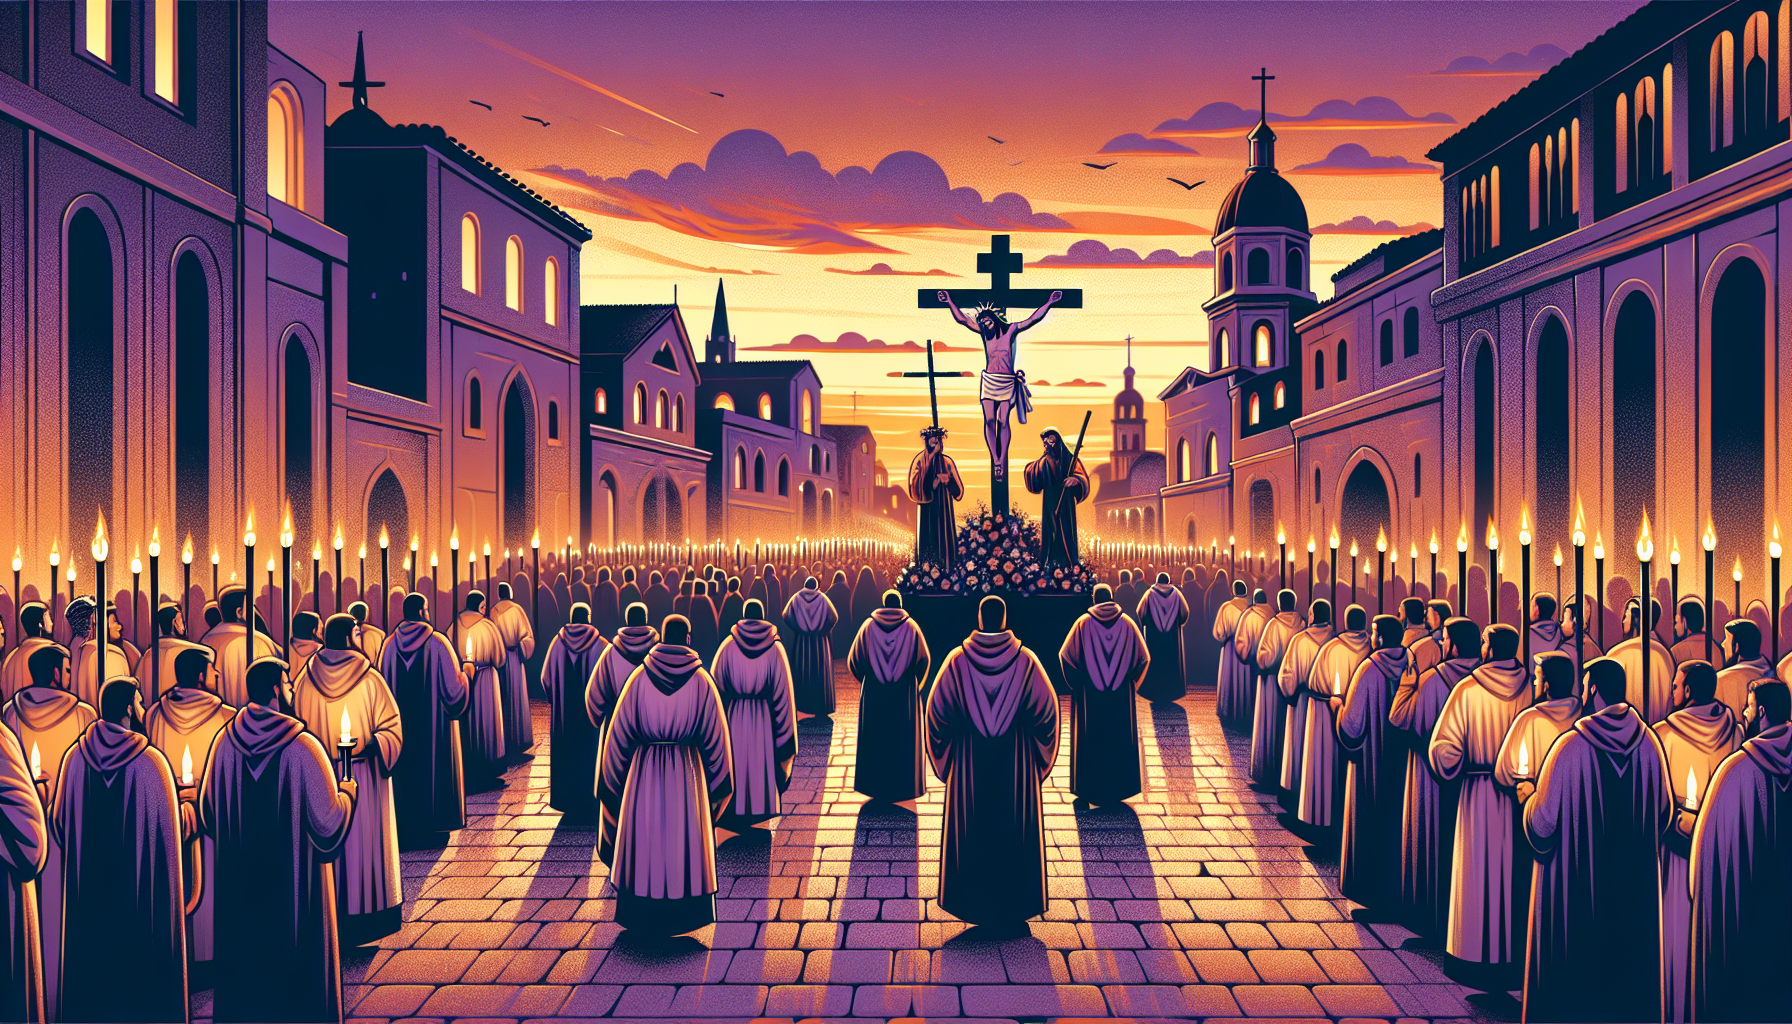 Una procesión solemne al atardecer durante el Viernes Santo, con figuras religiosas cargando una estatua de Jesús crucificado, rodeados de velas encendidas y fieles con túnicas tradicionales caminando